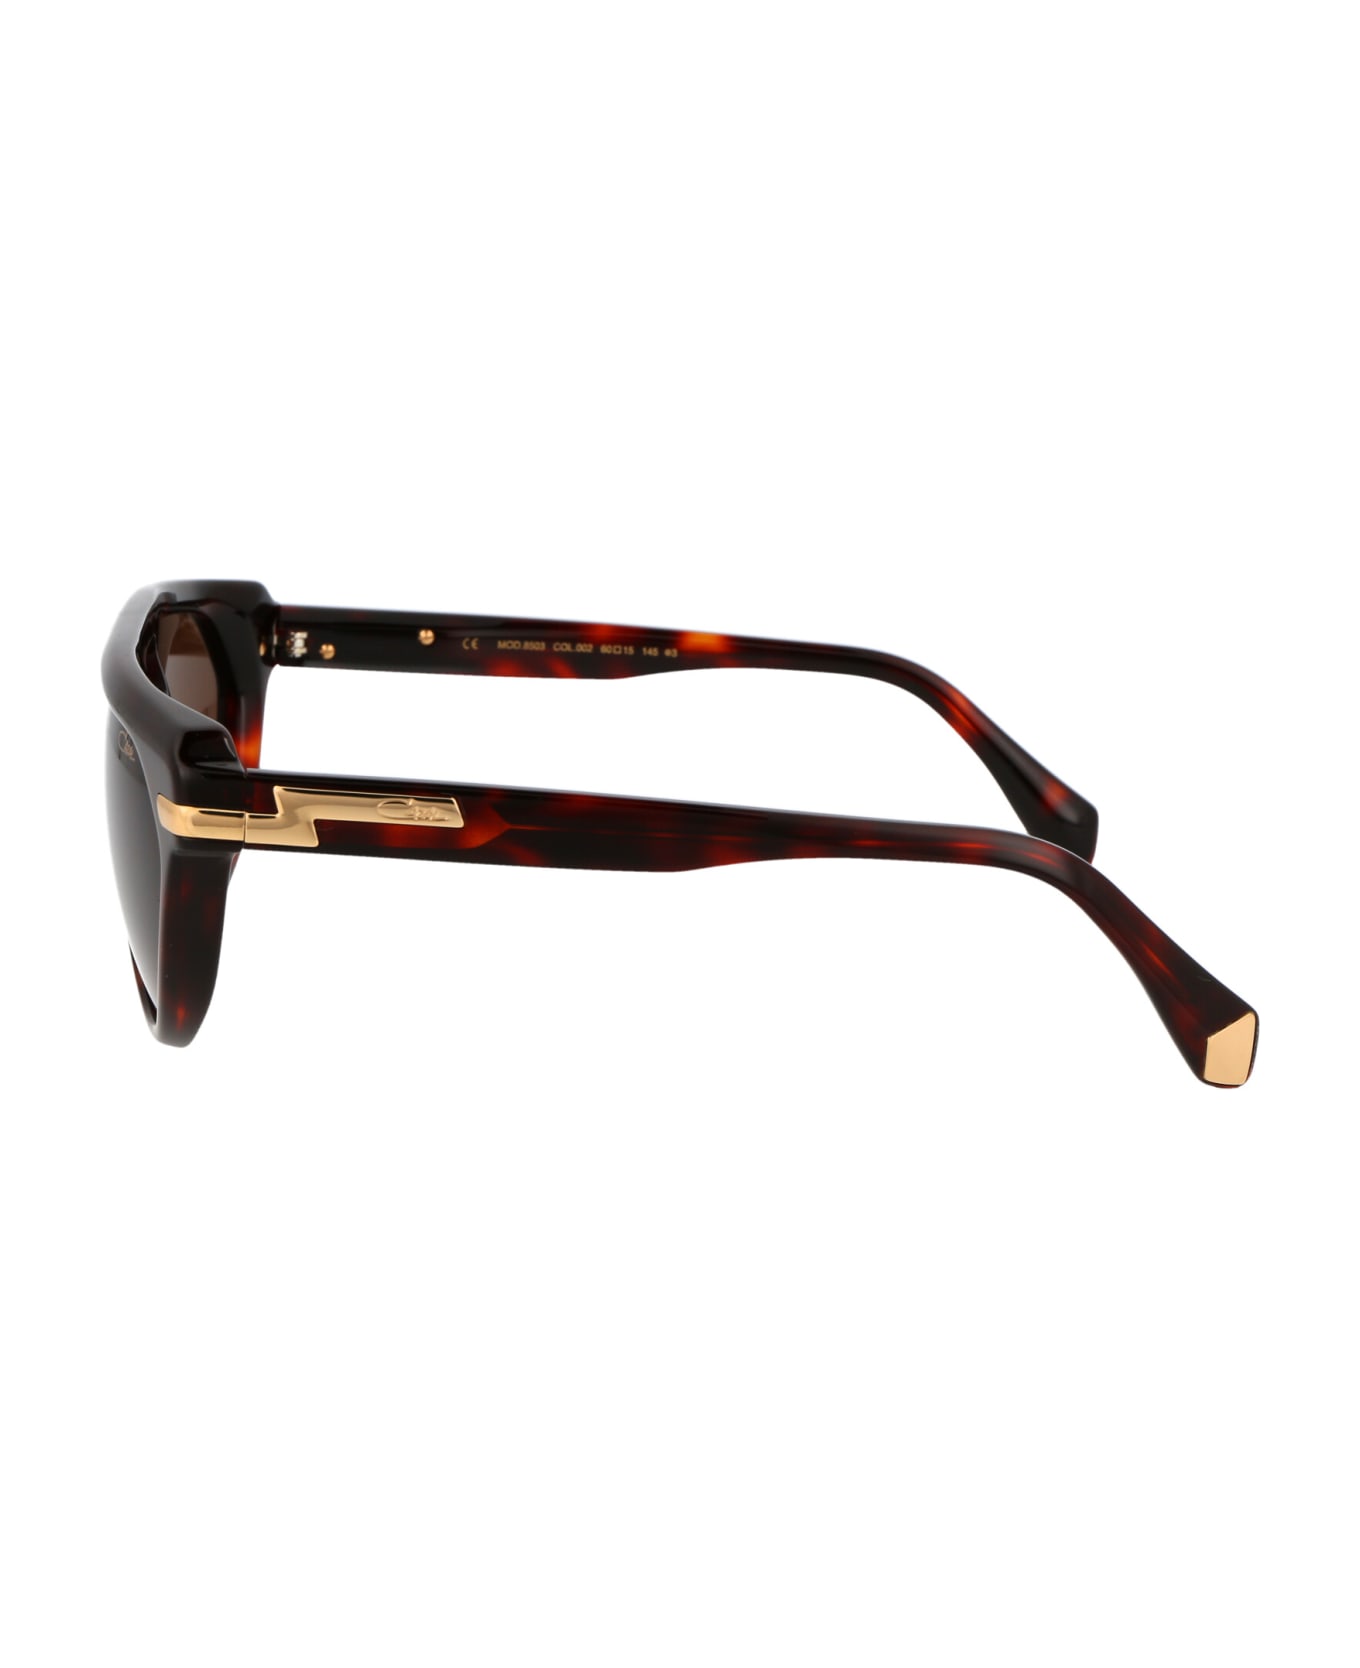 Cazal Mod. 8503 Sunglasses - 002 HAVANA サングラス